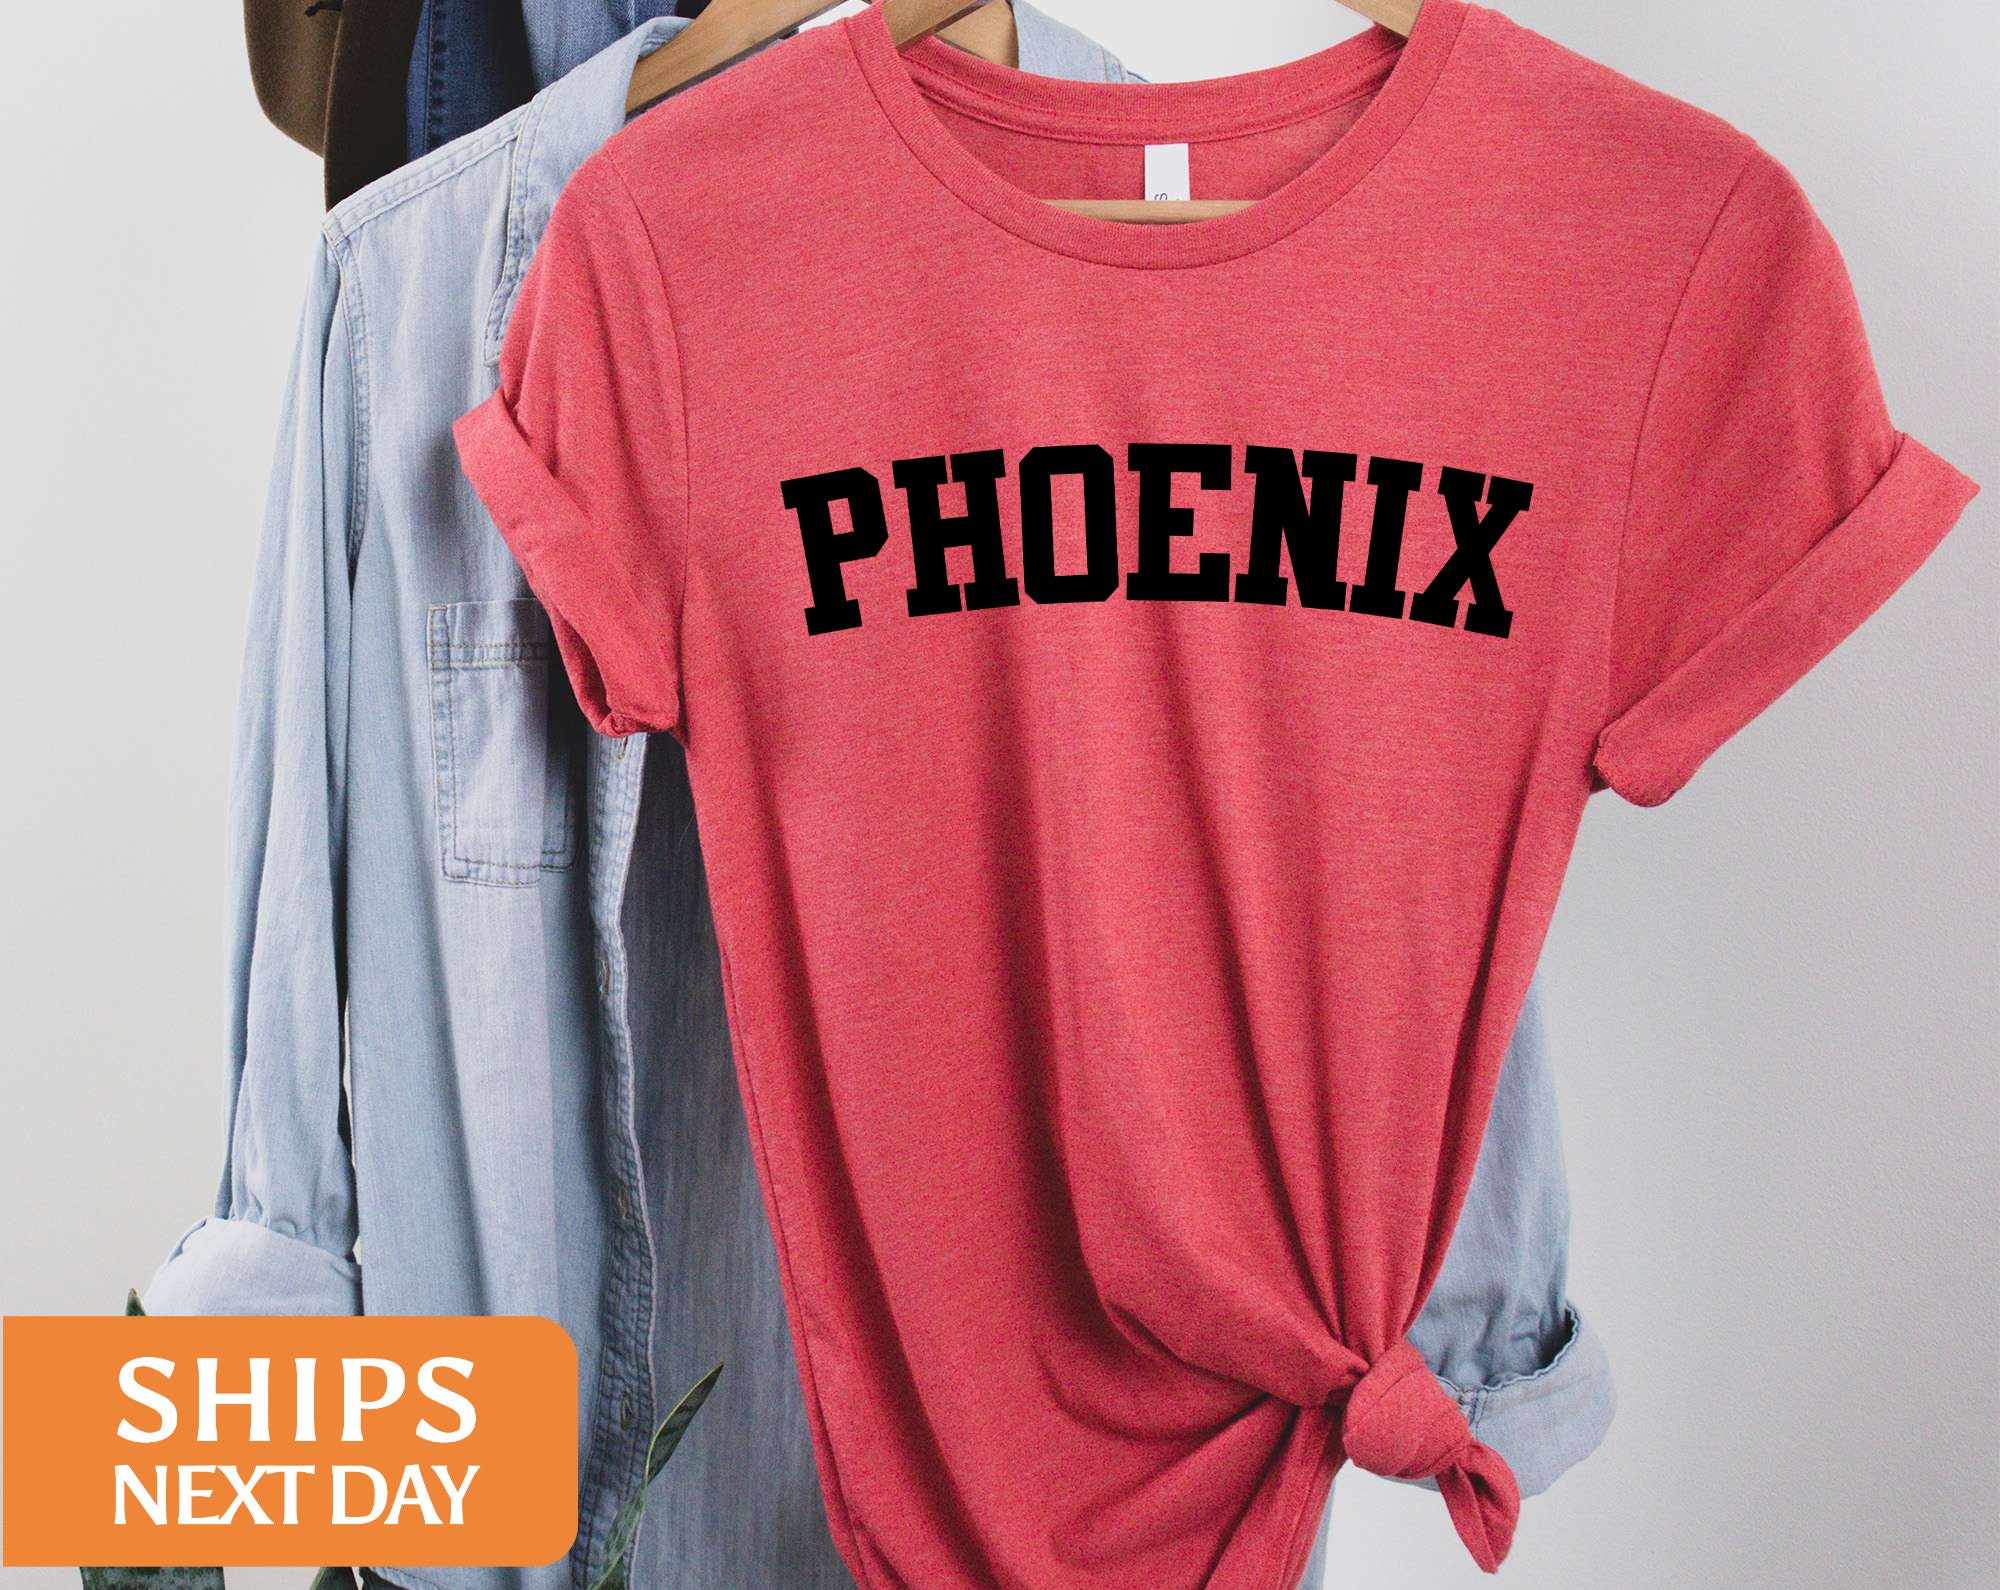 Phoenix Suns Bright Hawaiian Shirt For Men And Women Gift Beach -  Freedomdesign